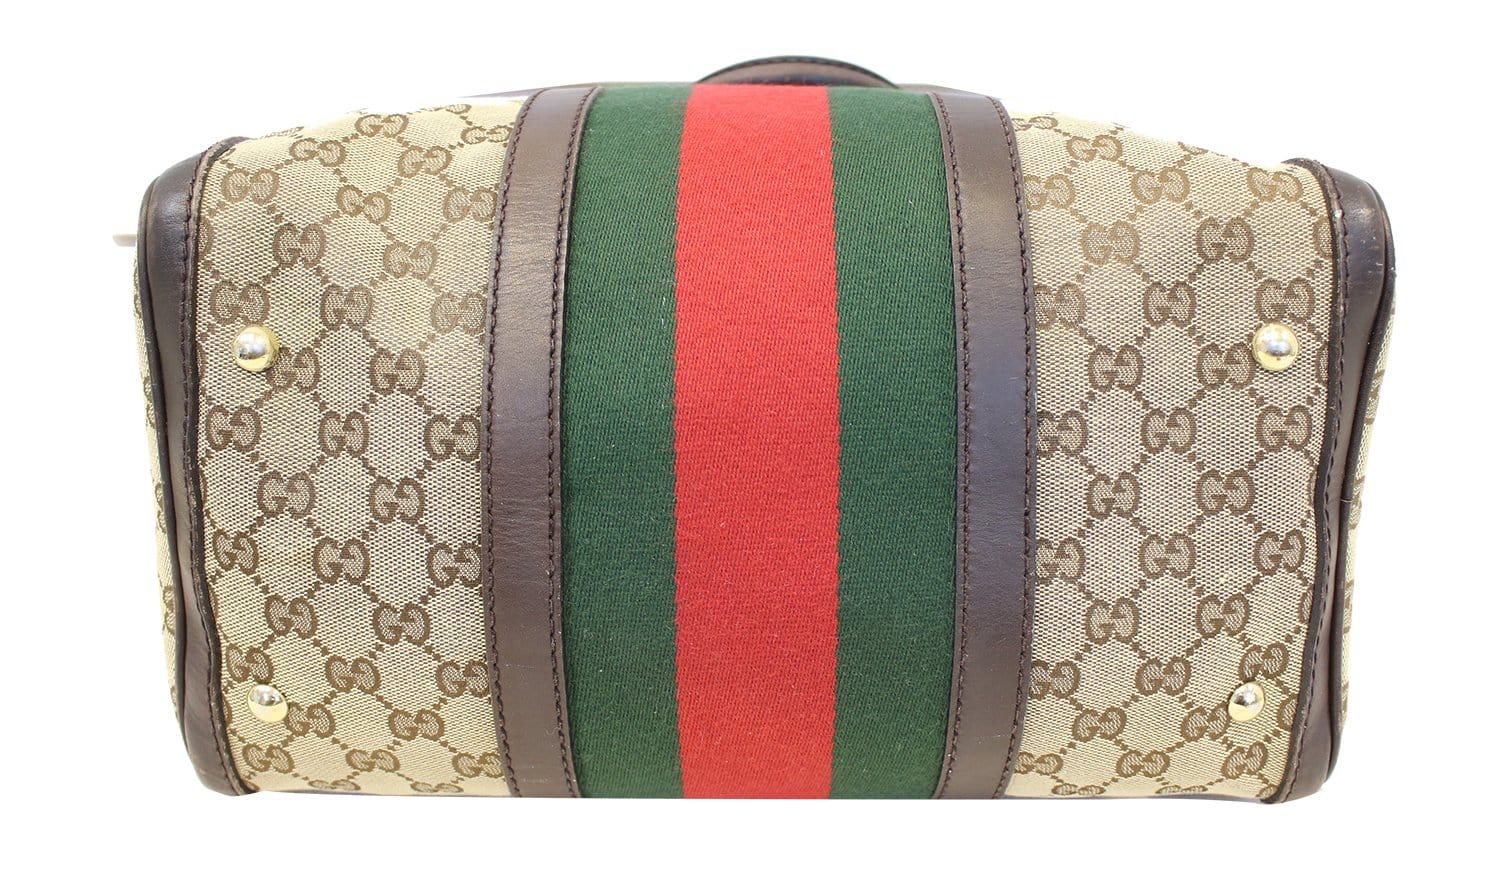 Gucci, Monogram GG Canvas Web Boston Bag, sand-colored c…